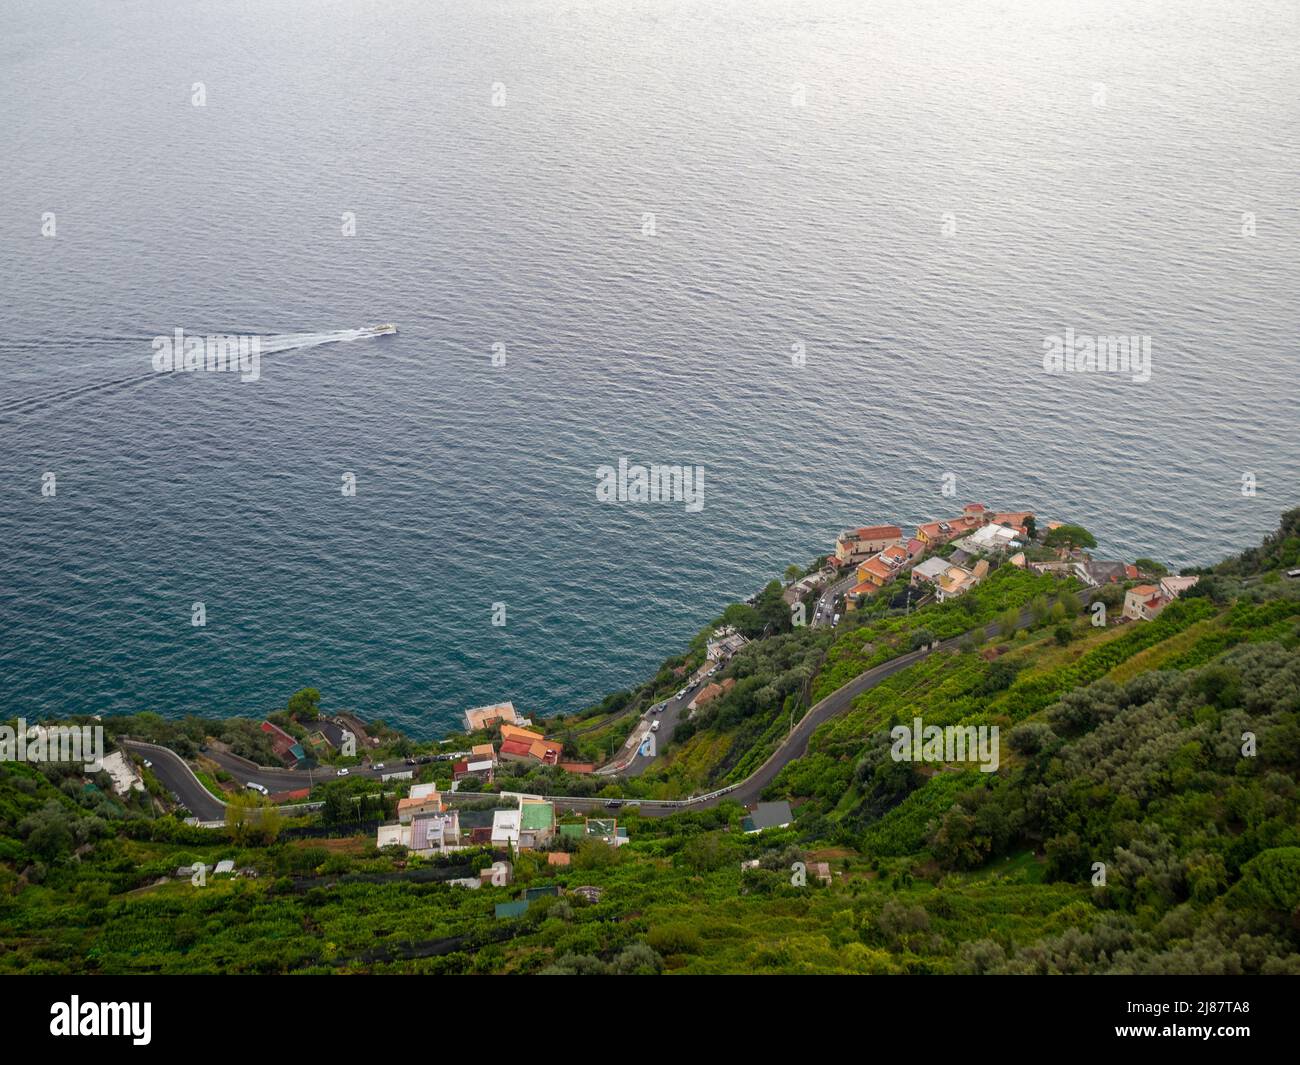 Carretera sinuosa sobre el mar de las verdes pendientes de la costa de Amalfi, visto desde la Terrazza dell'lnfinito, Villa Cimbrone Foto de stock